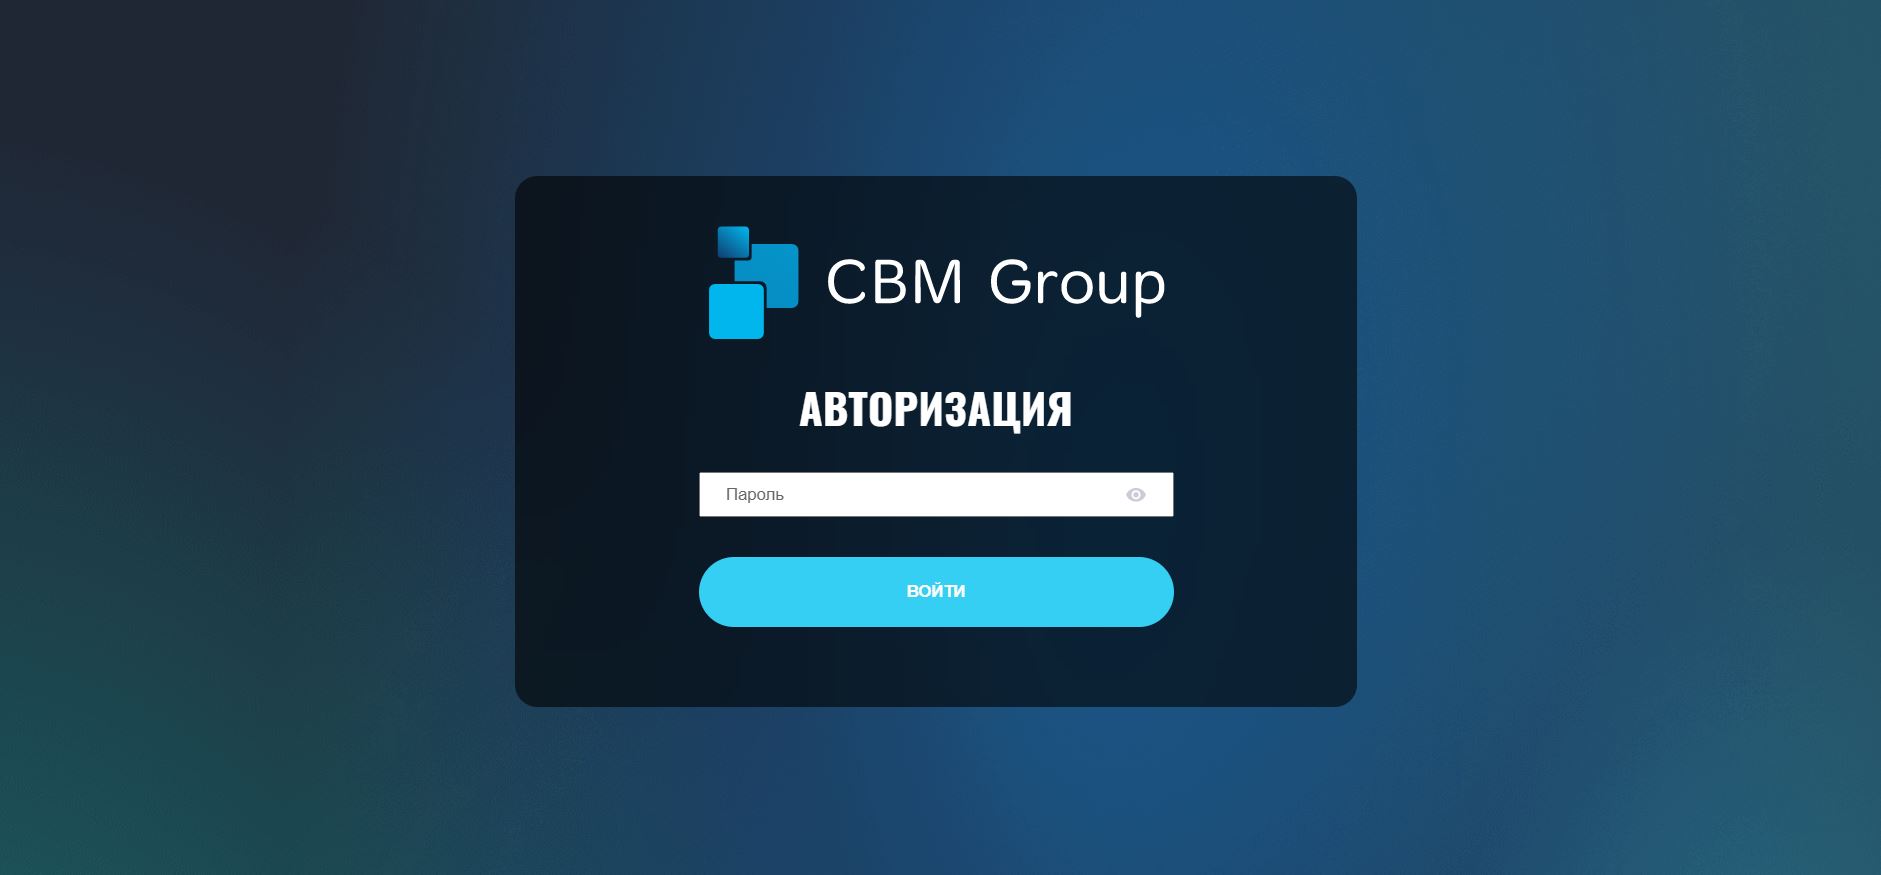 CBM Group